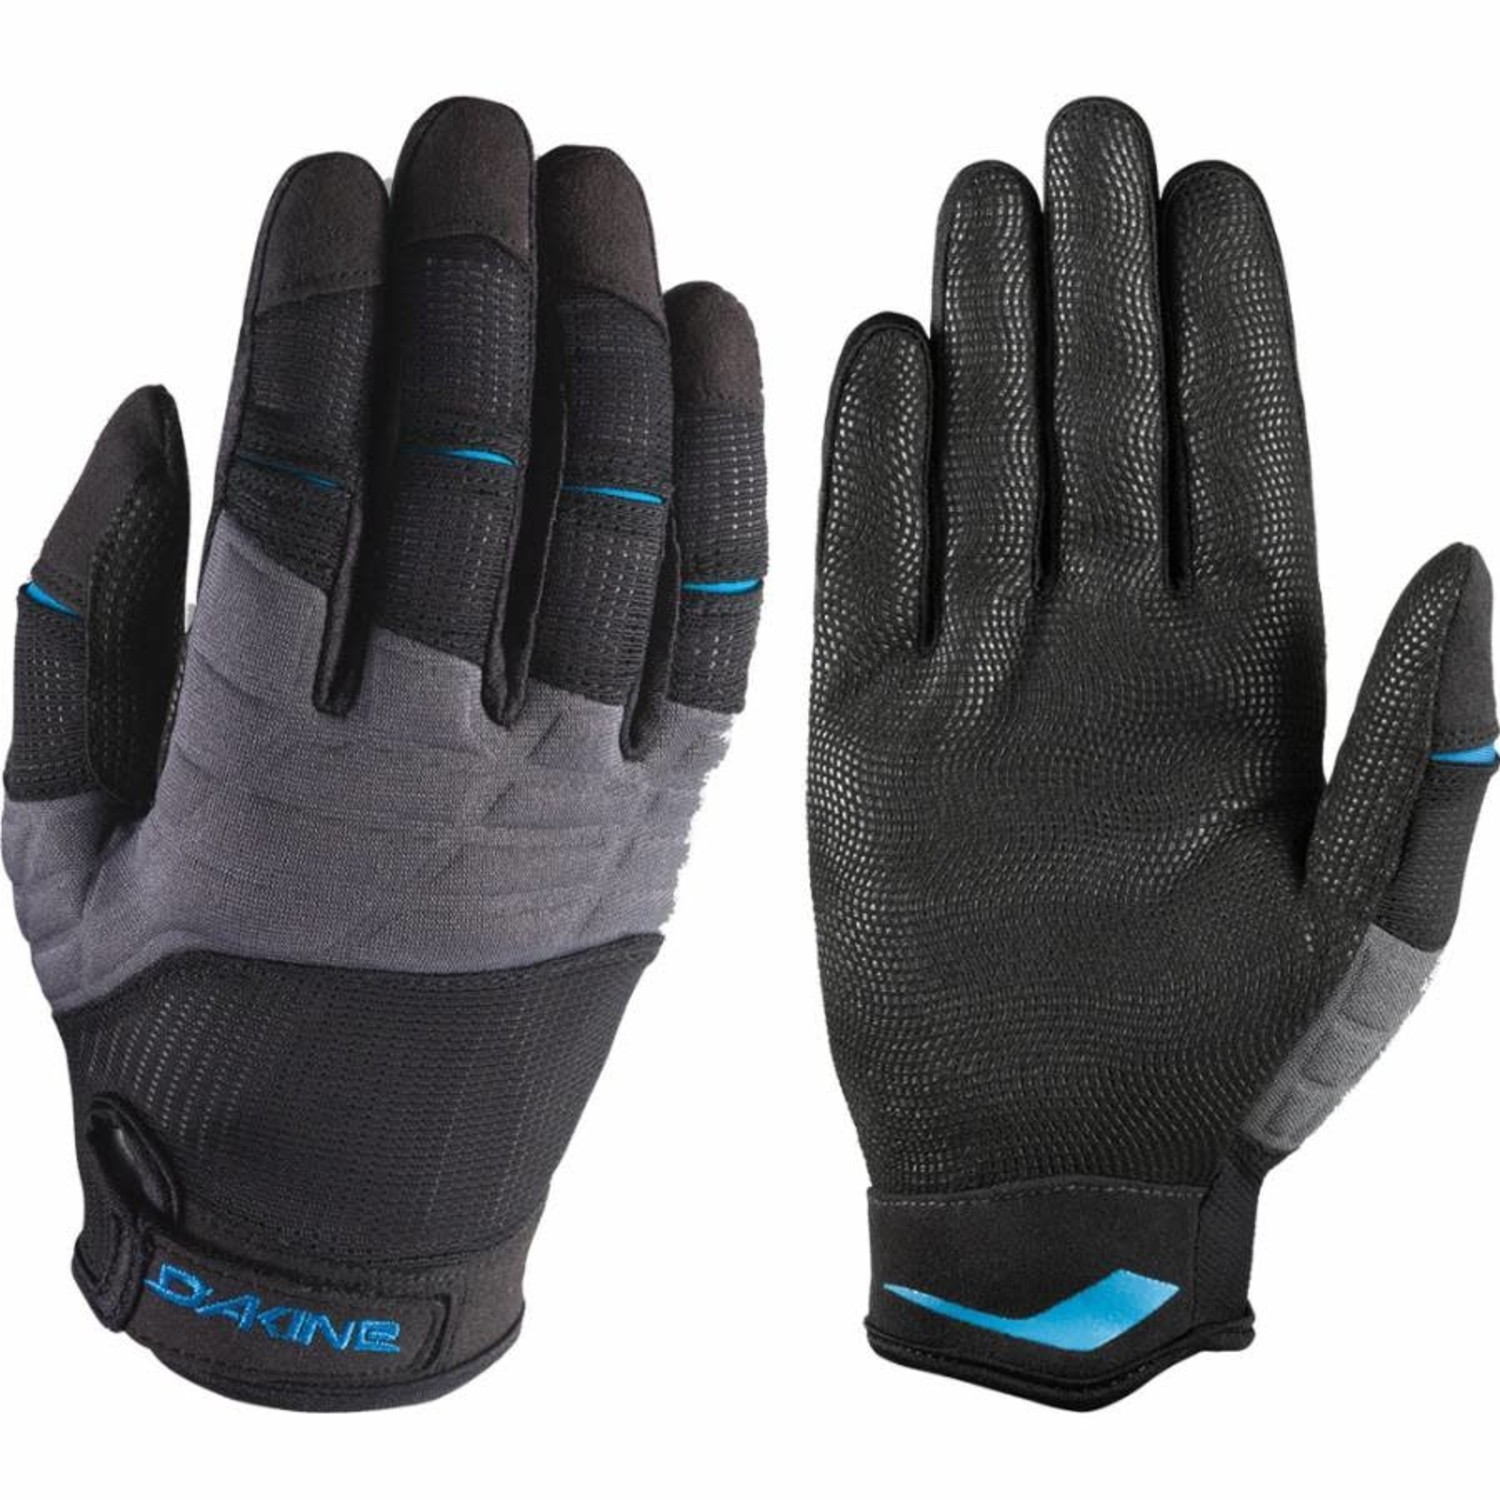 Dakine Dakine Full Finger Sailing Gloves Black